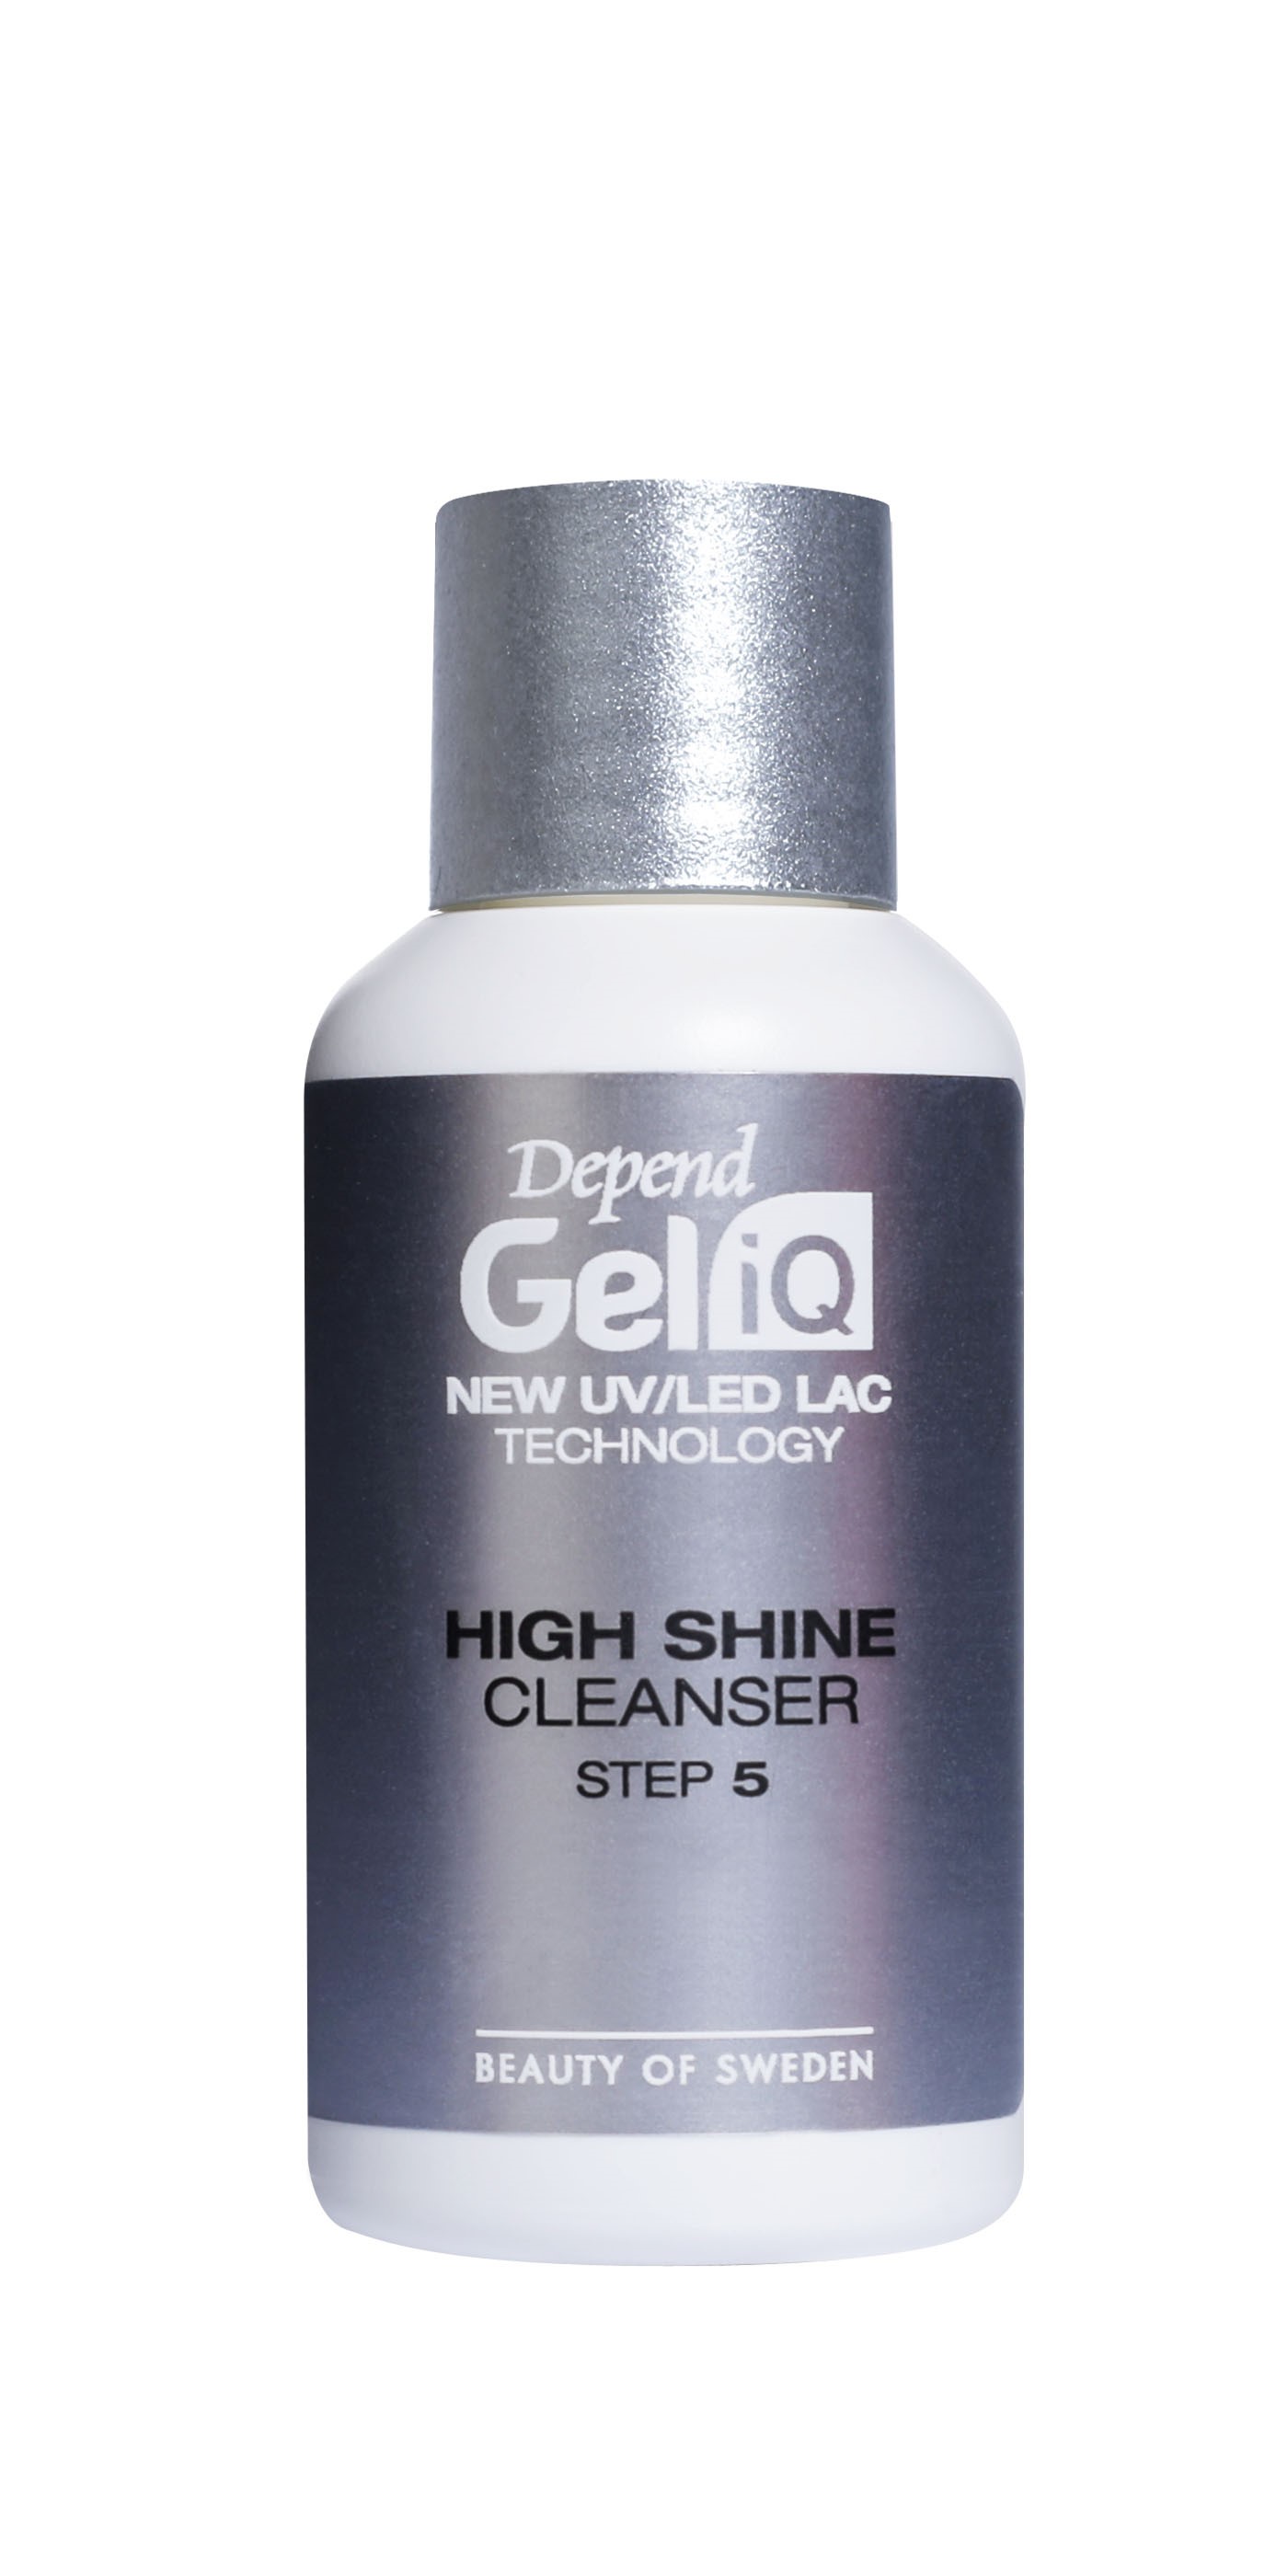 Gel iQ High Shine Cleanser Step 5